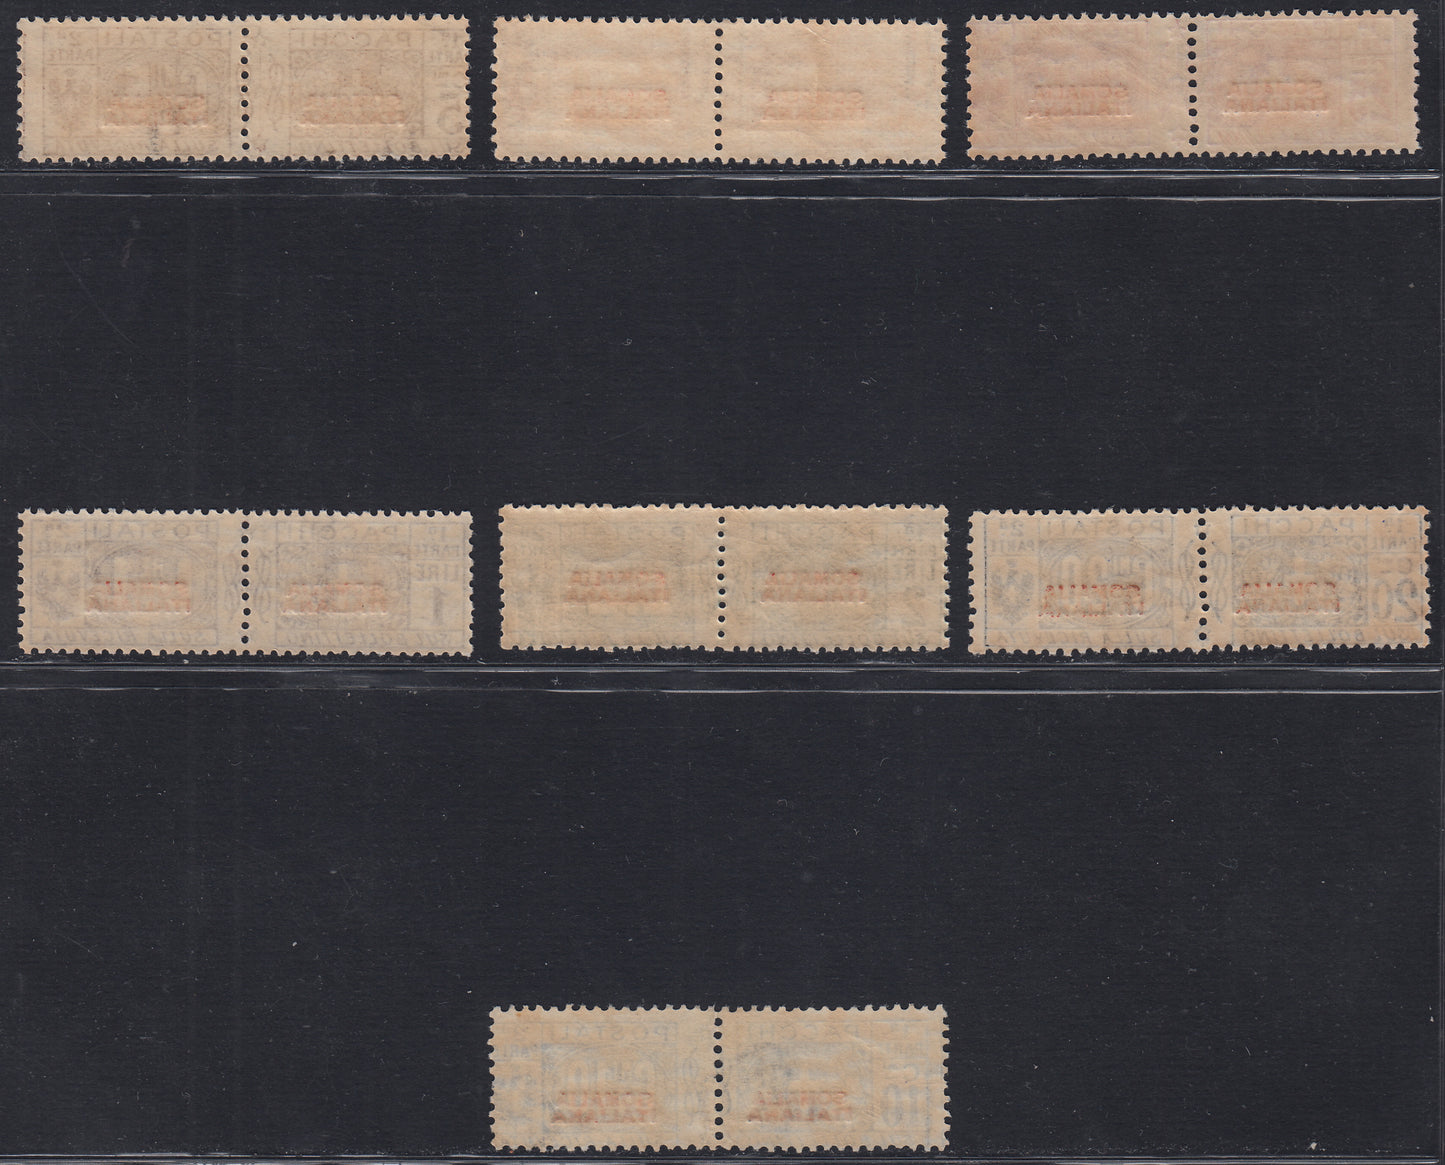 CG60 - 1926/31 - Pacchi Postali con soprastampa in rosso del I tipo, non emessi, serie completa di sette valori nuovi con gomma integra (43/49)